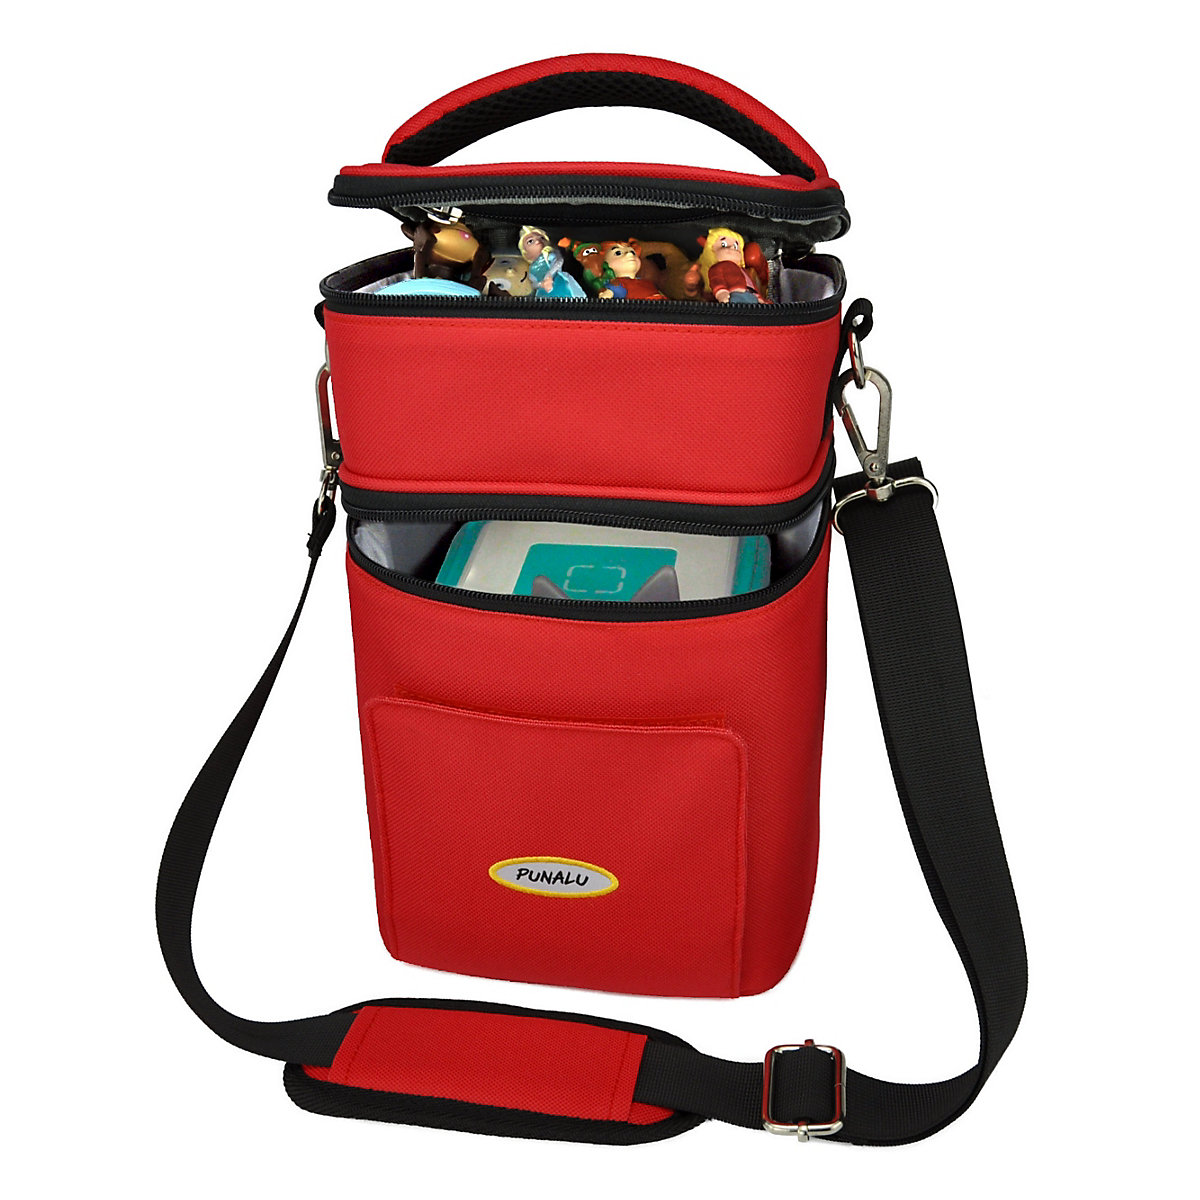 PUNALU Kompakte Tasche für Toniebox und Zubehör Platz für ca. 20 Tonies Hörfiguren Toniebox Tasche